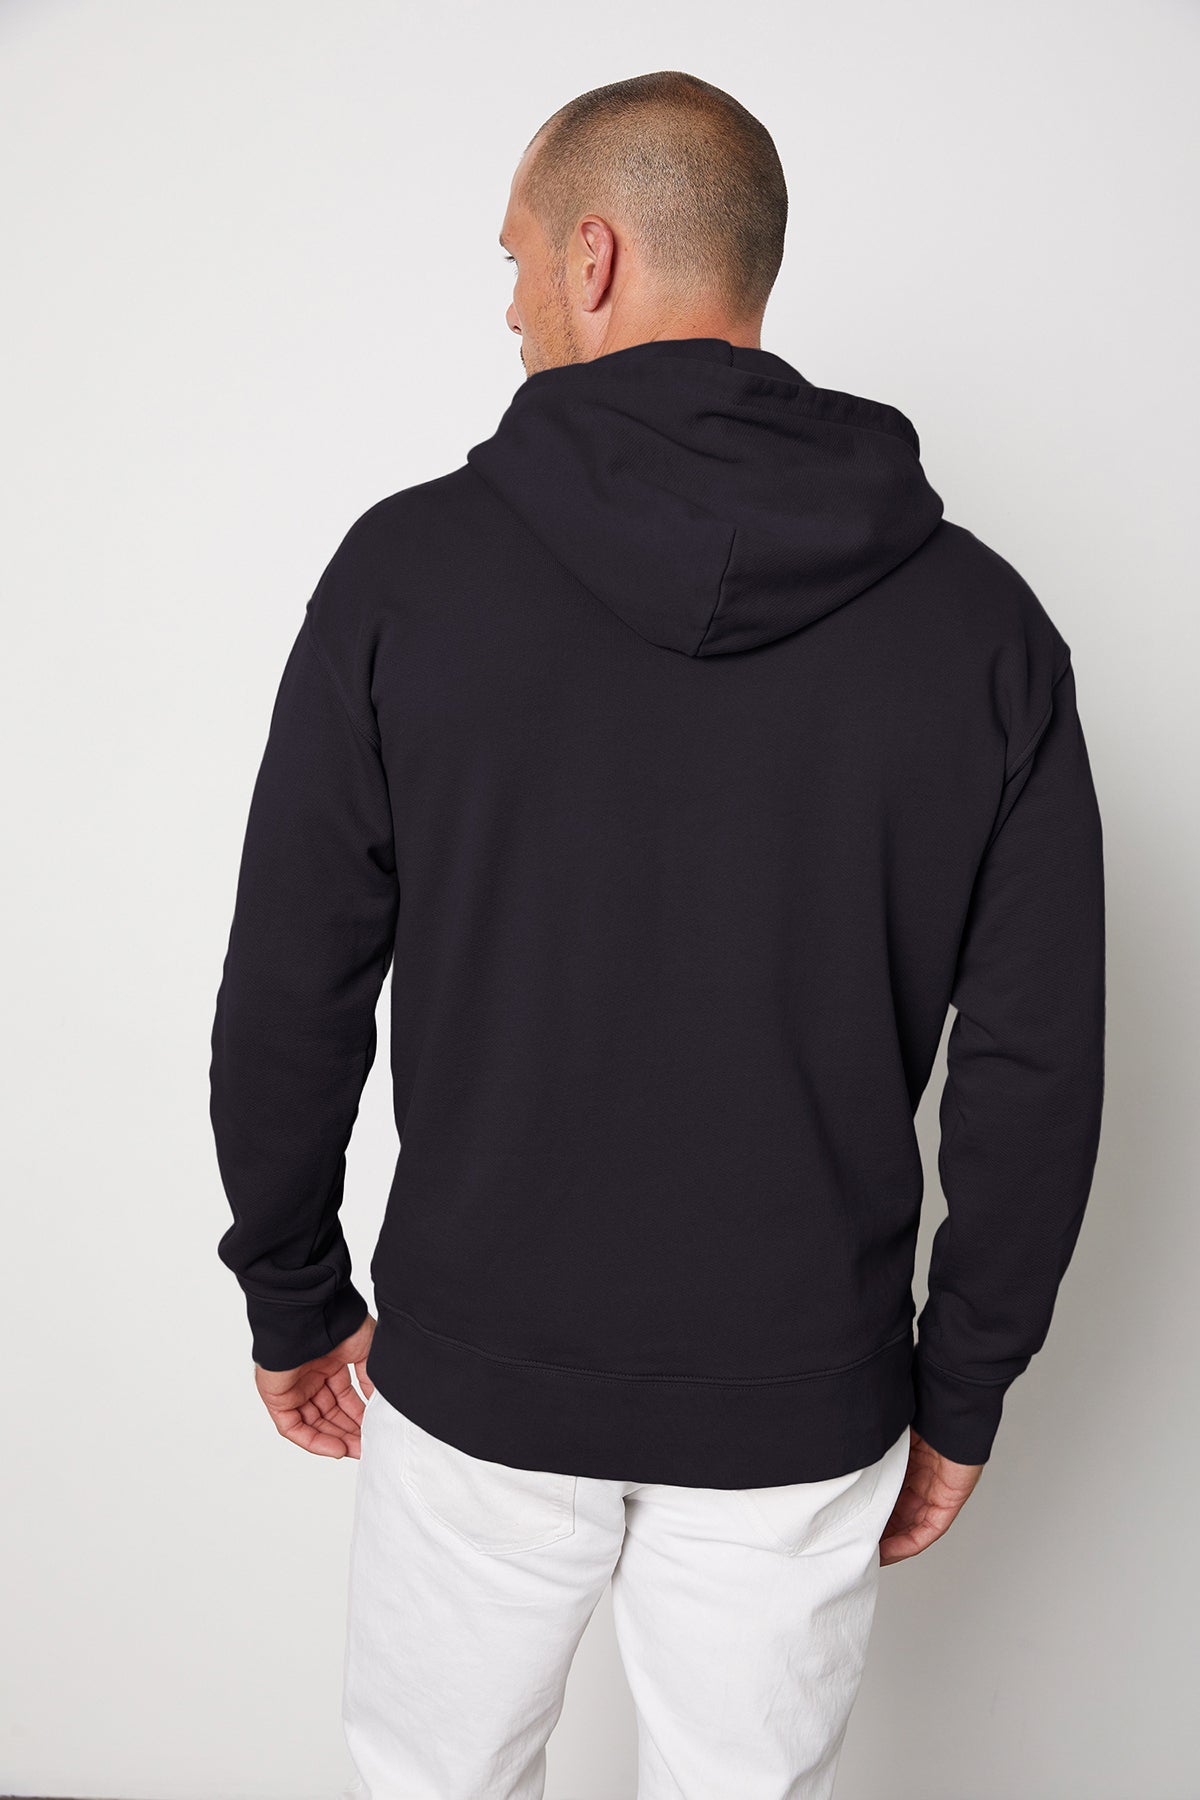   Issac hoodie vintage black back 